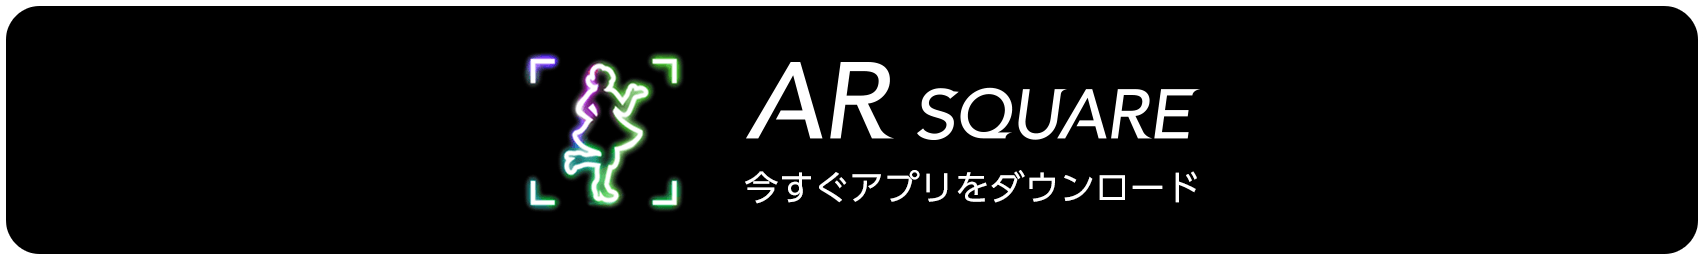 AR SQUARE 今すぐアプリをダウンロード